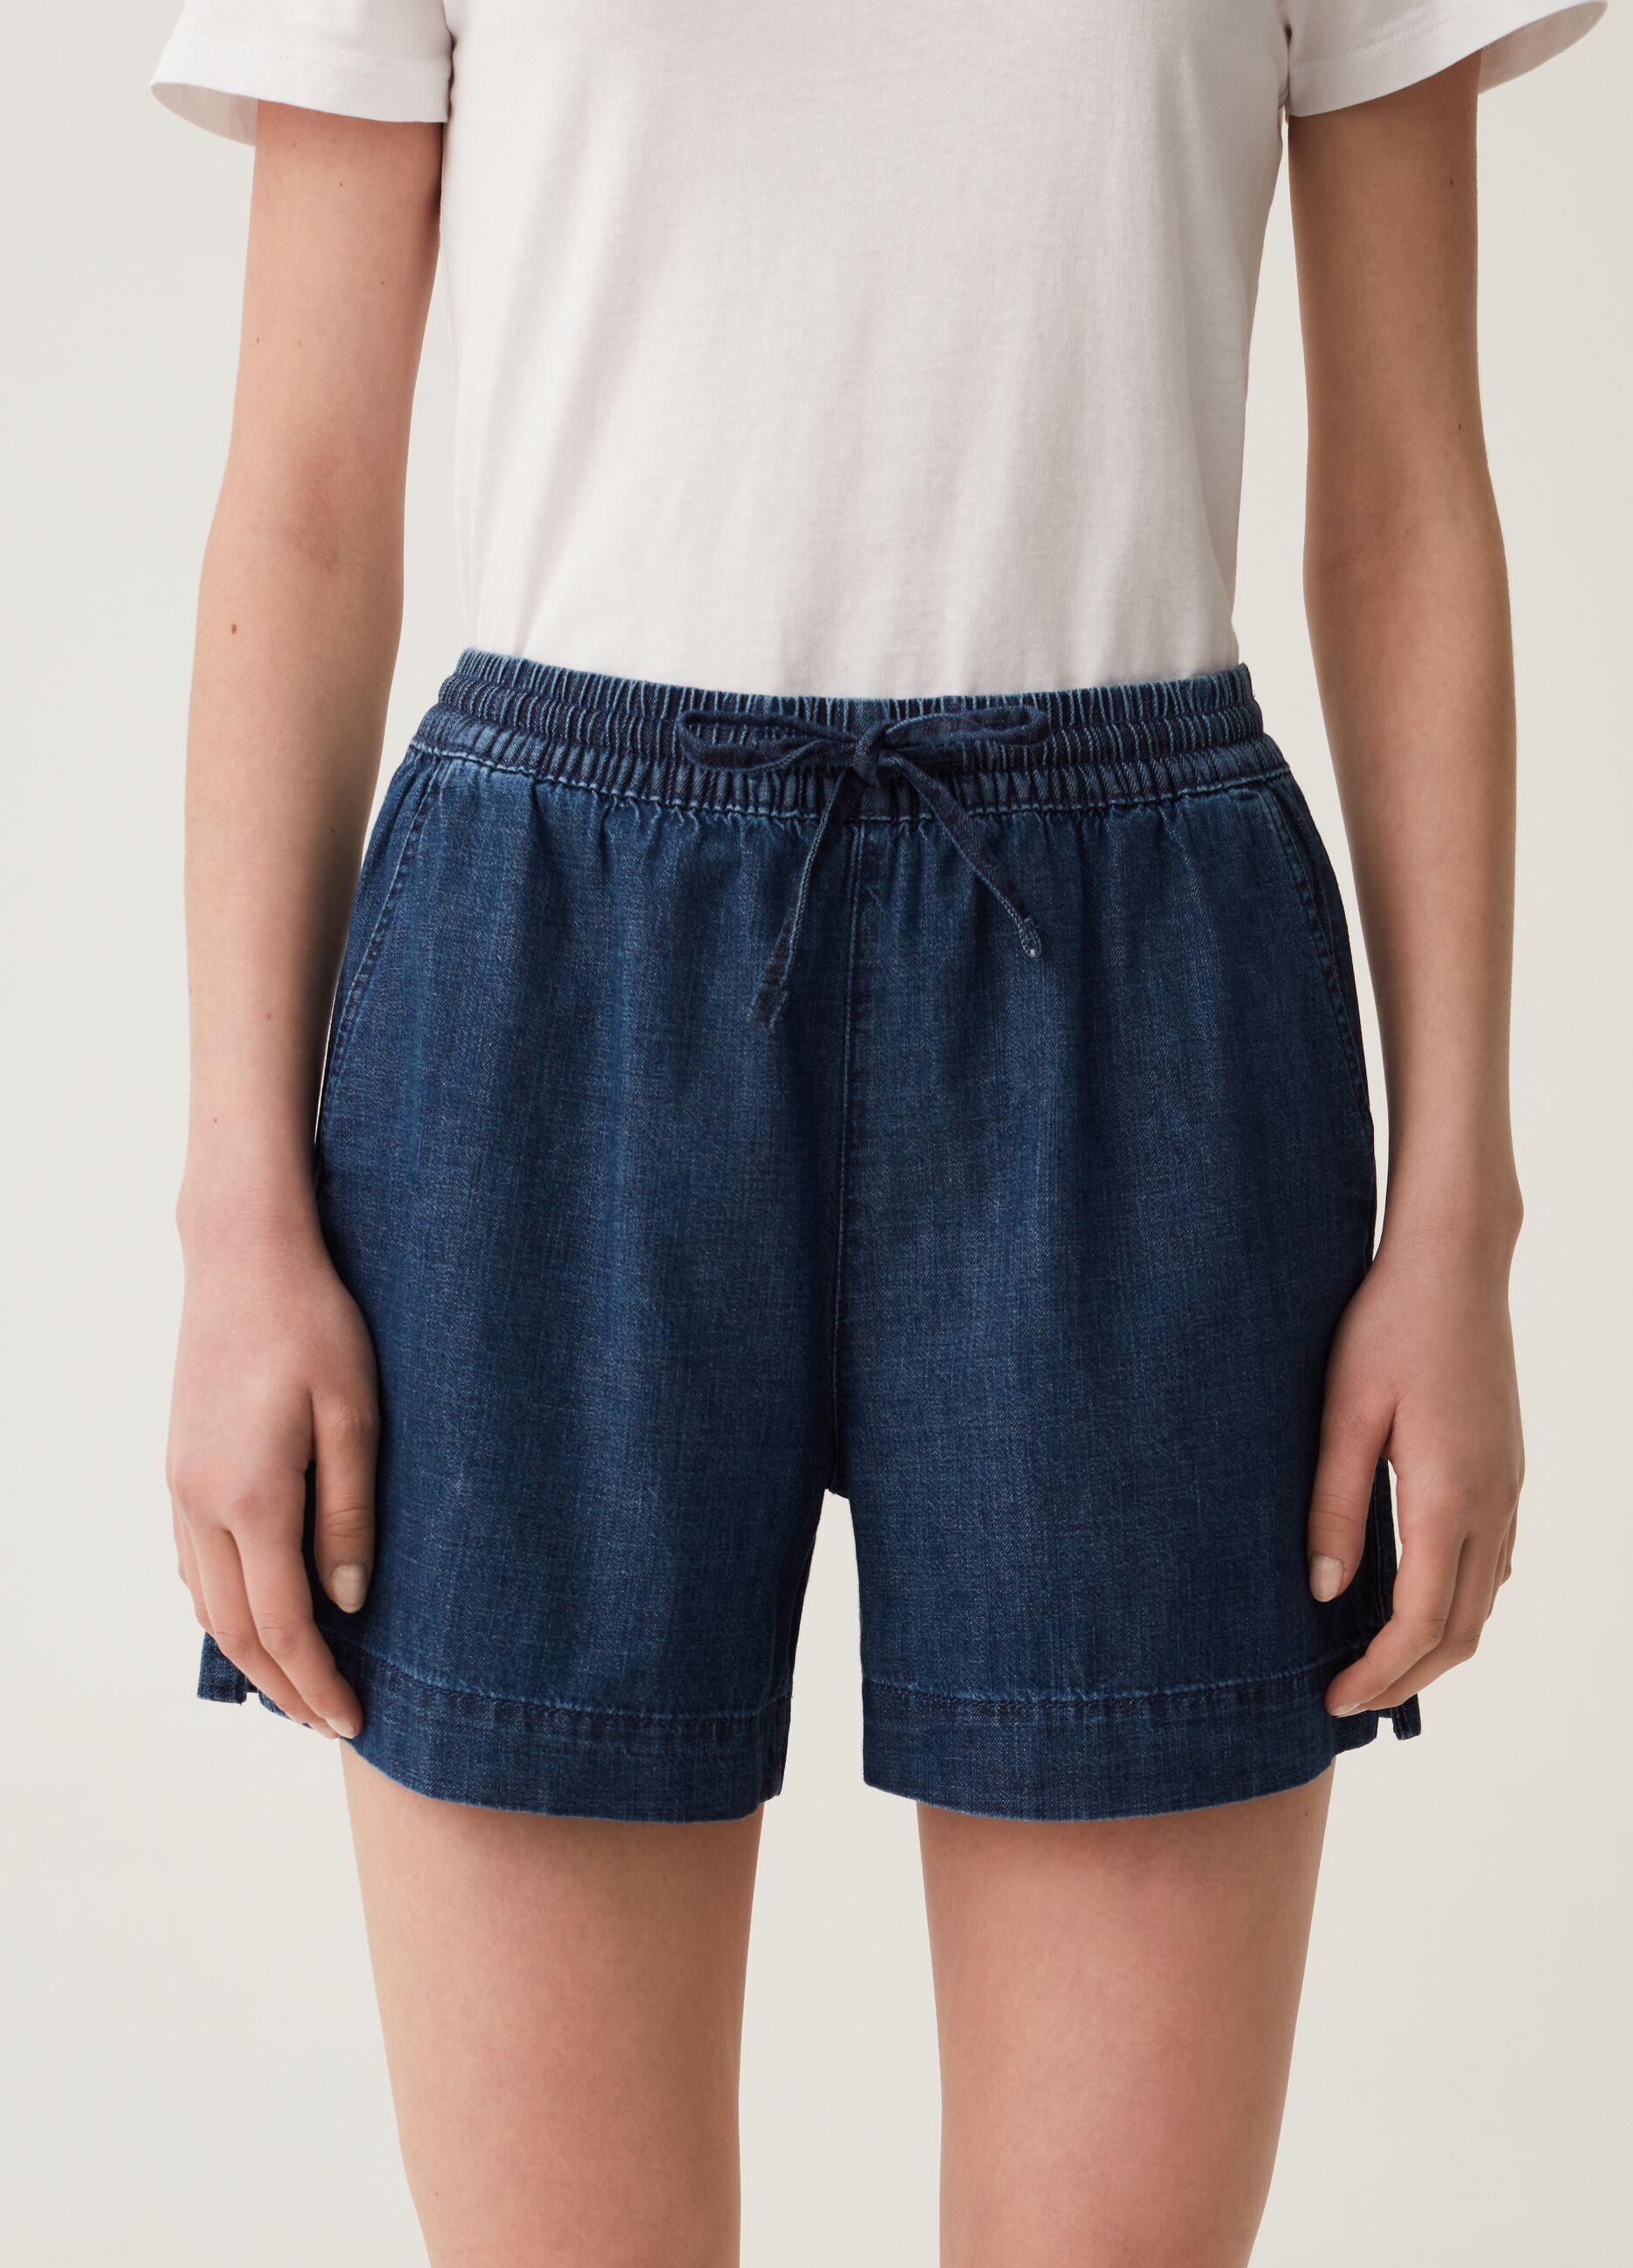 Denim shorts with drawstring